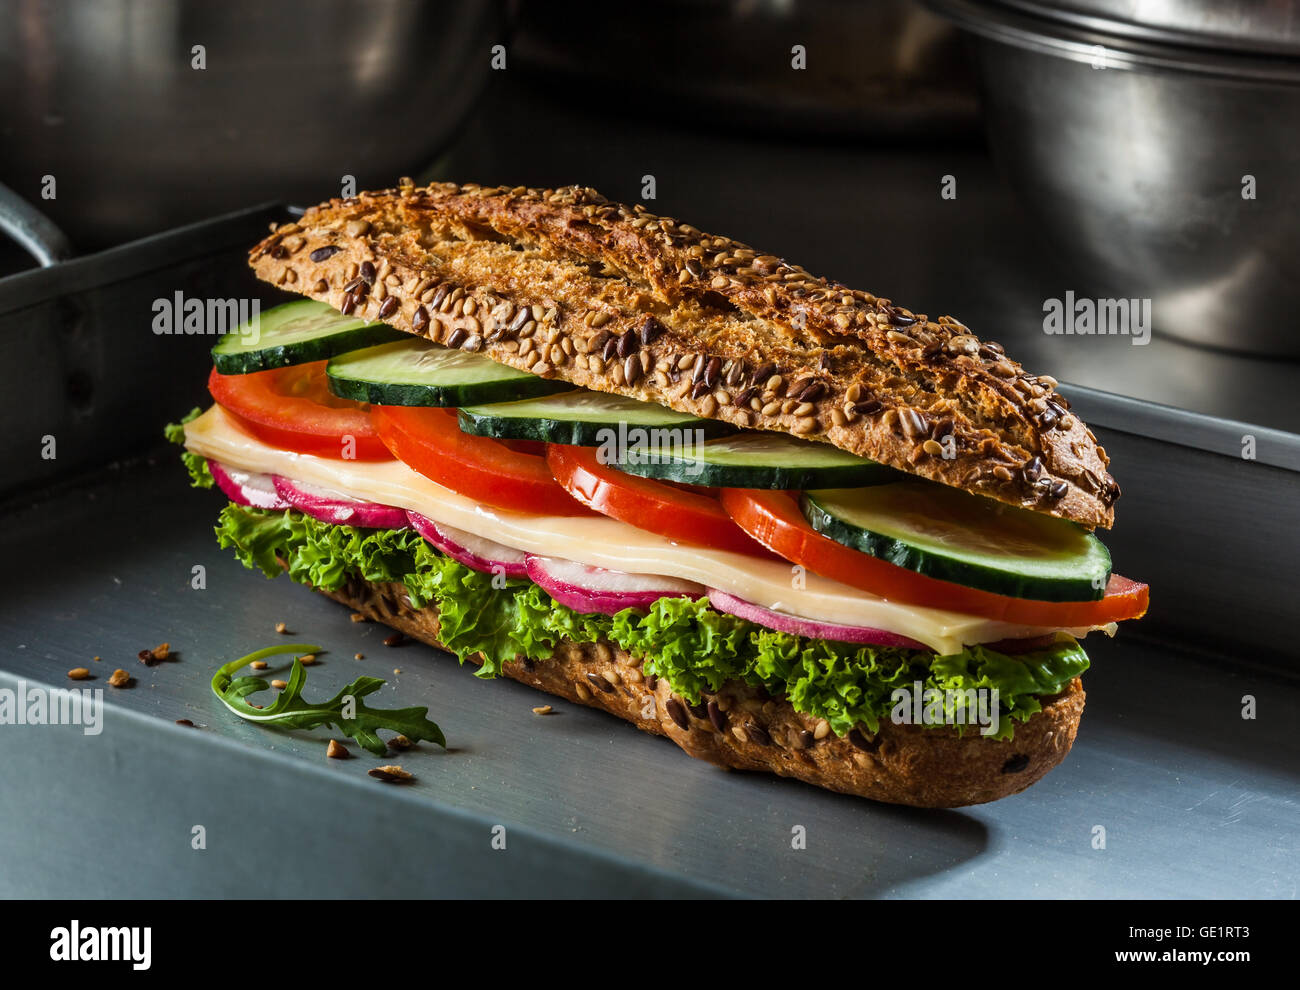 Sandwich mit Käse, Tomaten, Gurken, Radieschen und Salat. Dunkel und launisch. Stockfoto